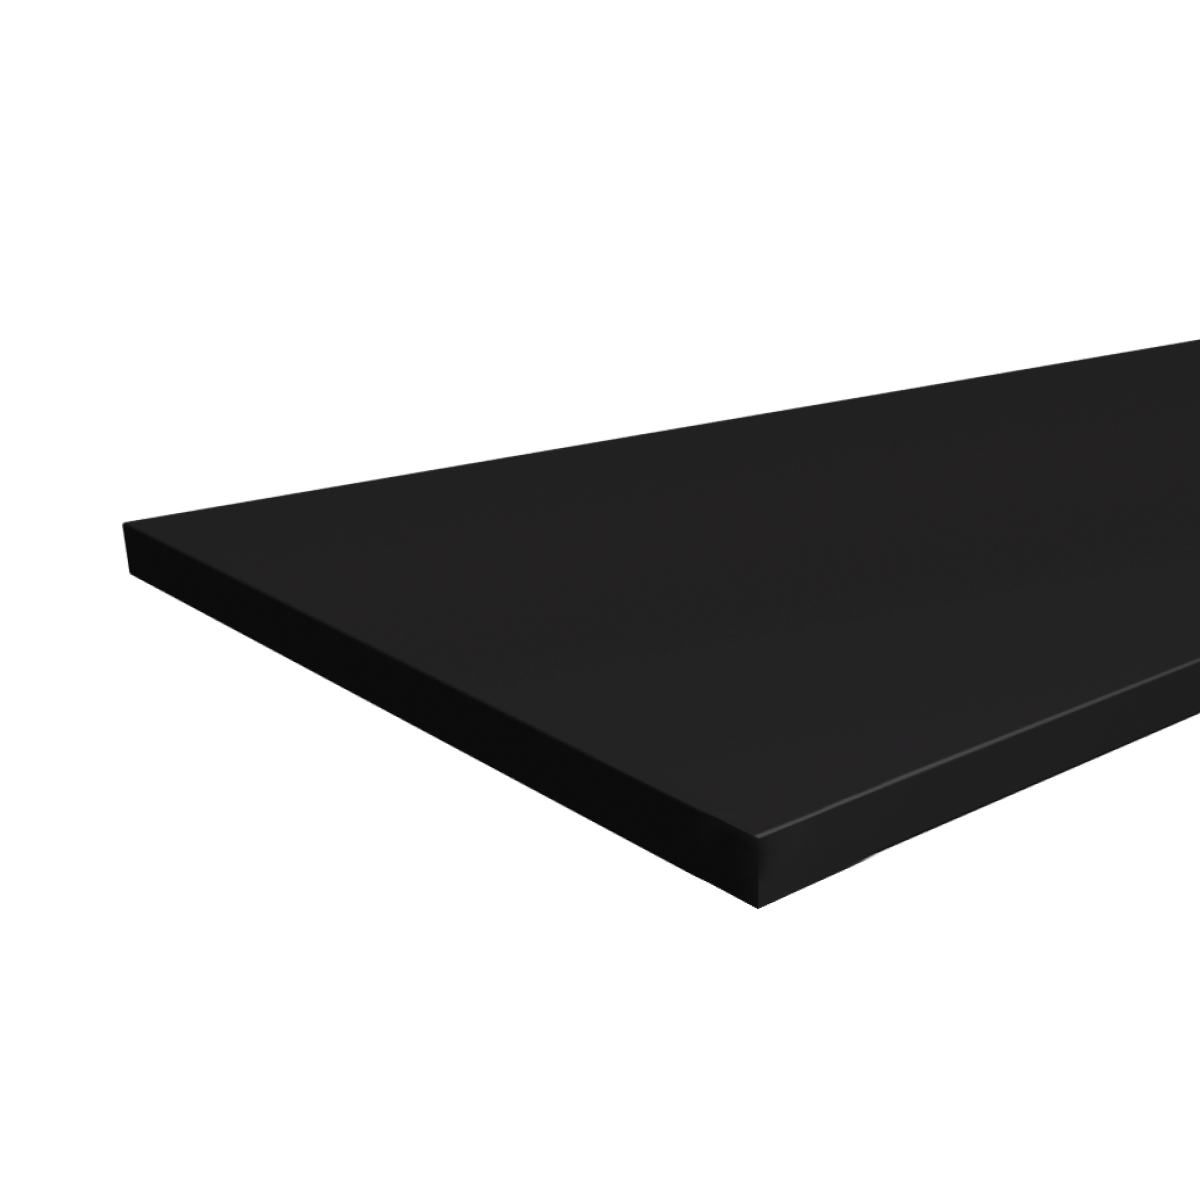 Столешница ЛДСП без скруглений LuxAlto U999 ST2, цвет чёрный, 1800*800*25 мм